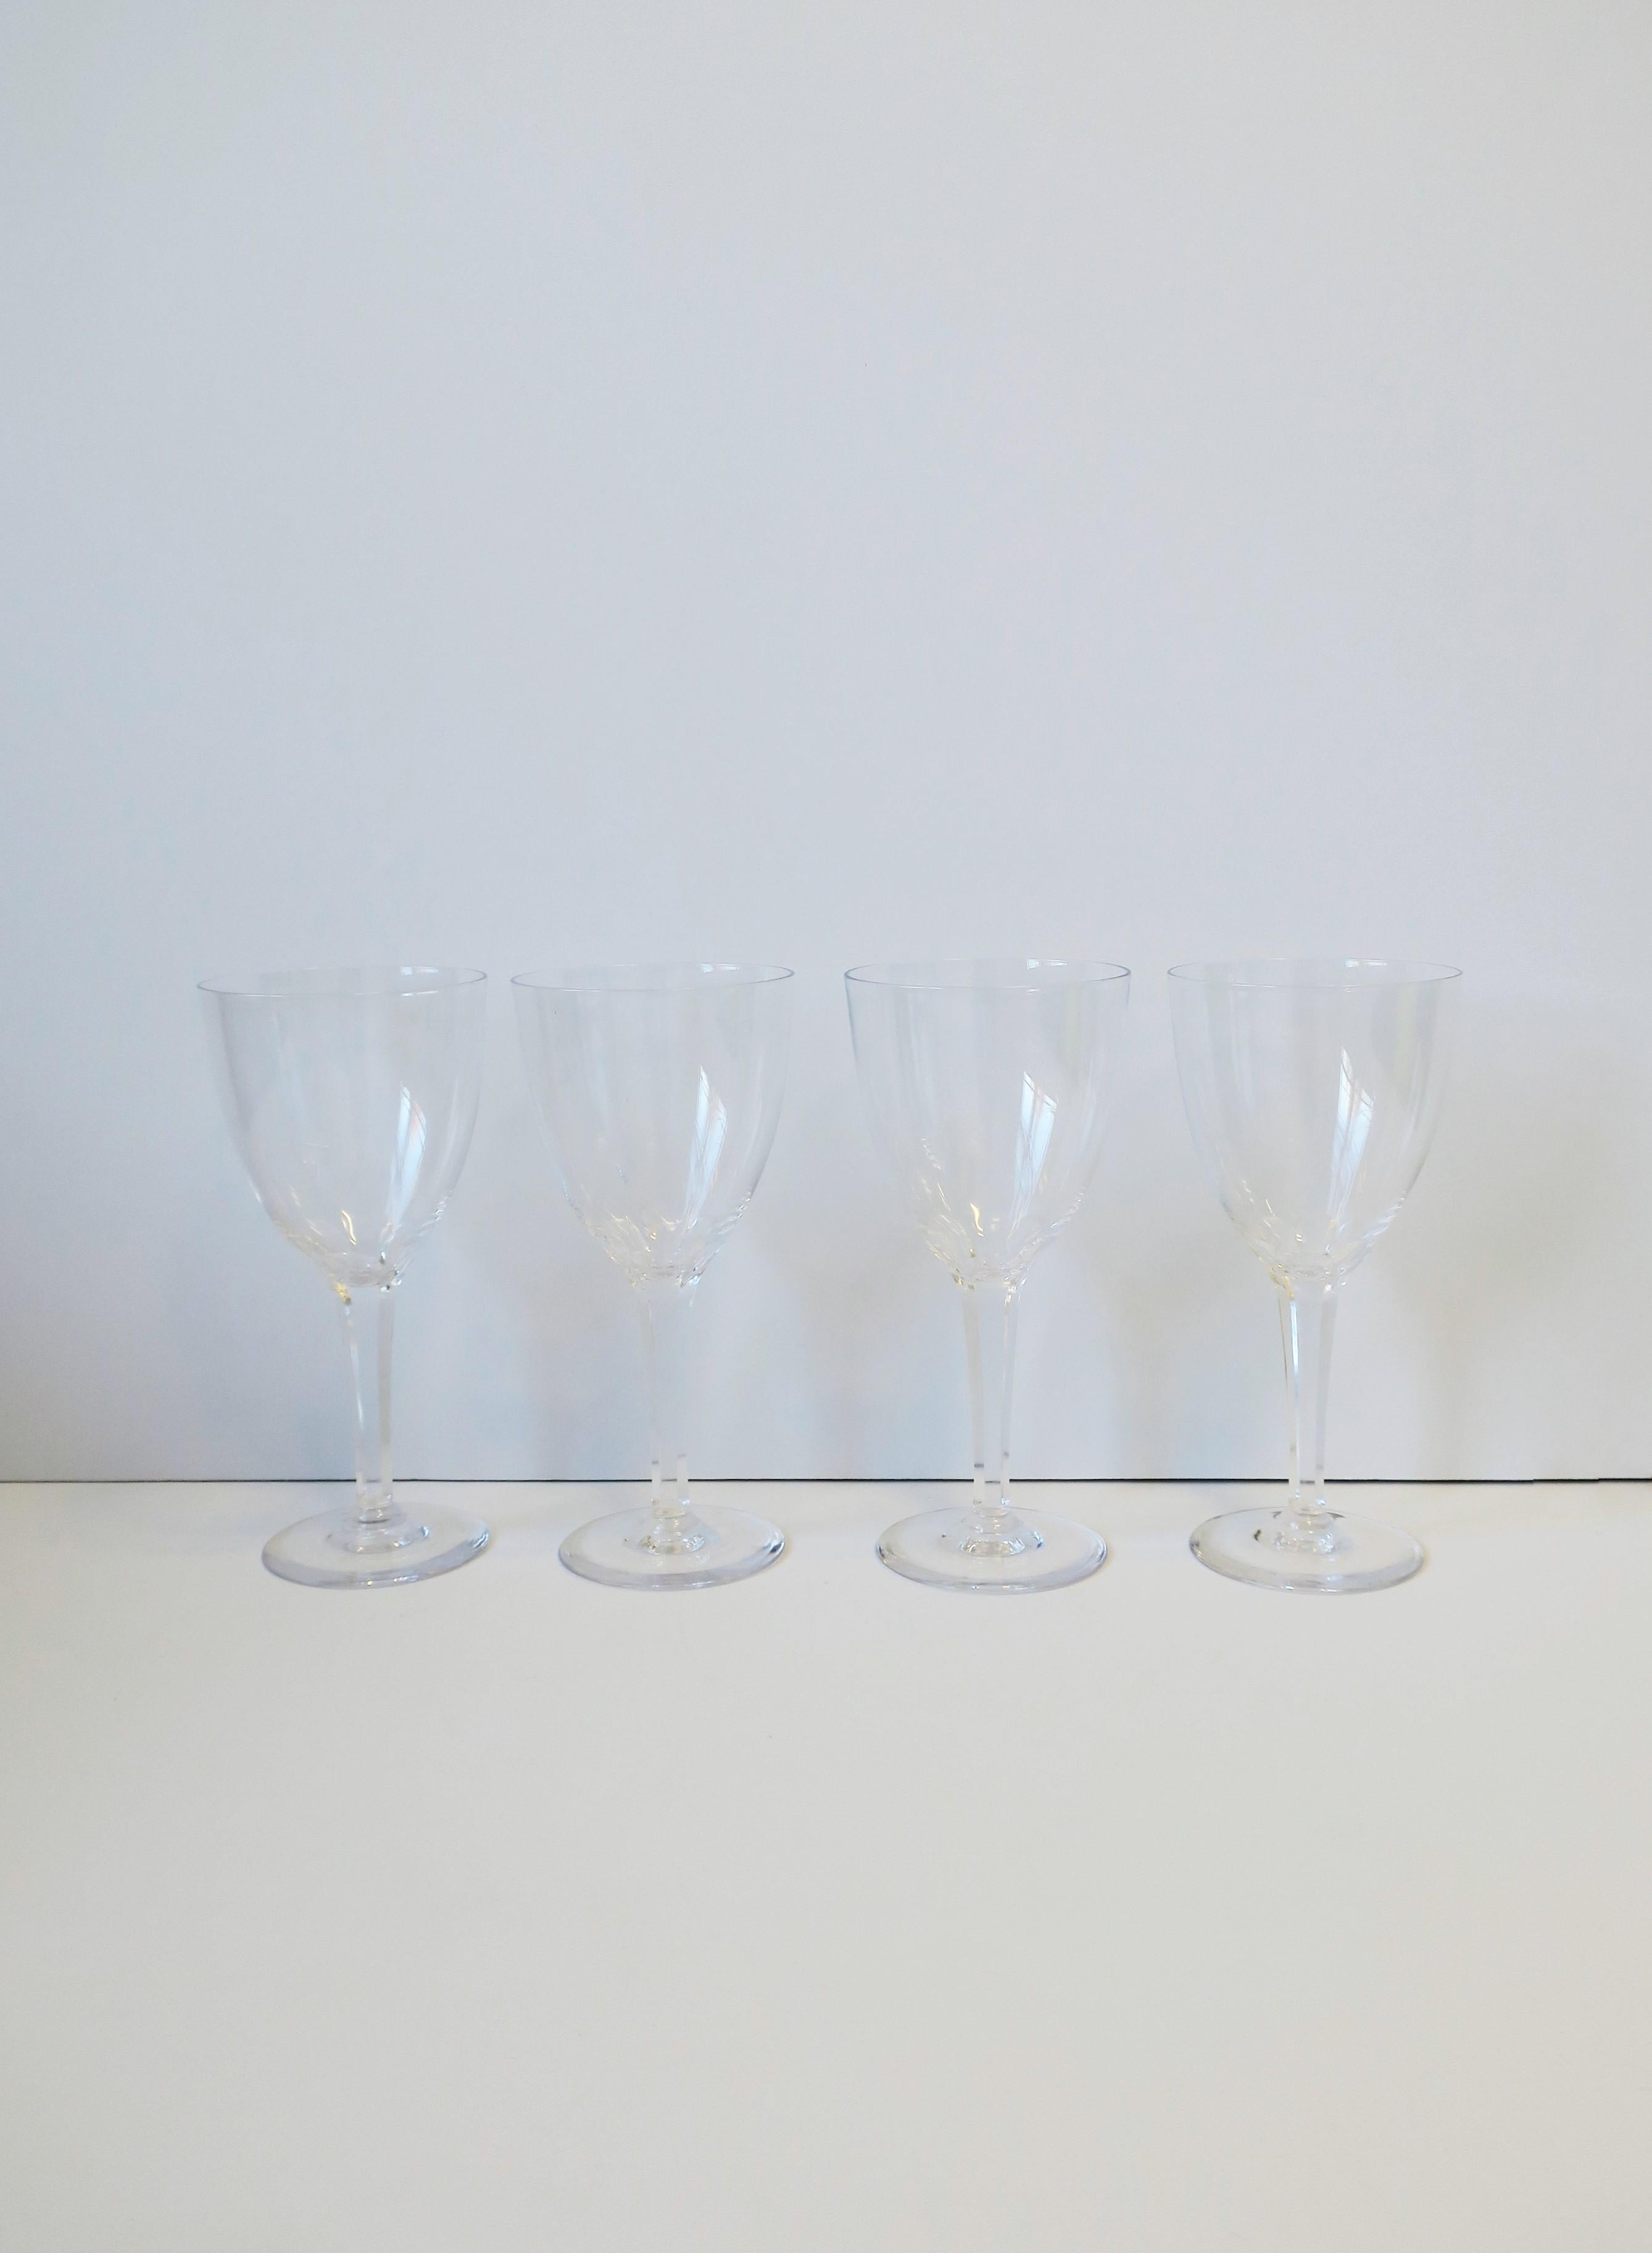 Un magnifique ensemble de quatre (4) rares verres à vin ou à eau en cristal Vintage Boda, période Midcentury Modern, vers le milieu du 20e siècle, Suède. Avec la marque du fabricant gravée 